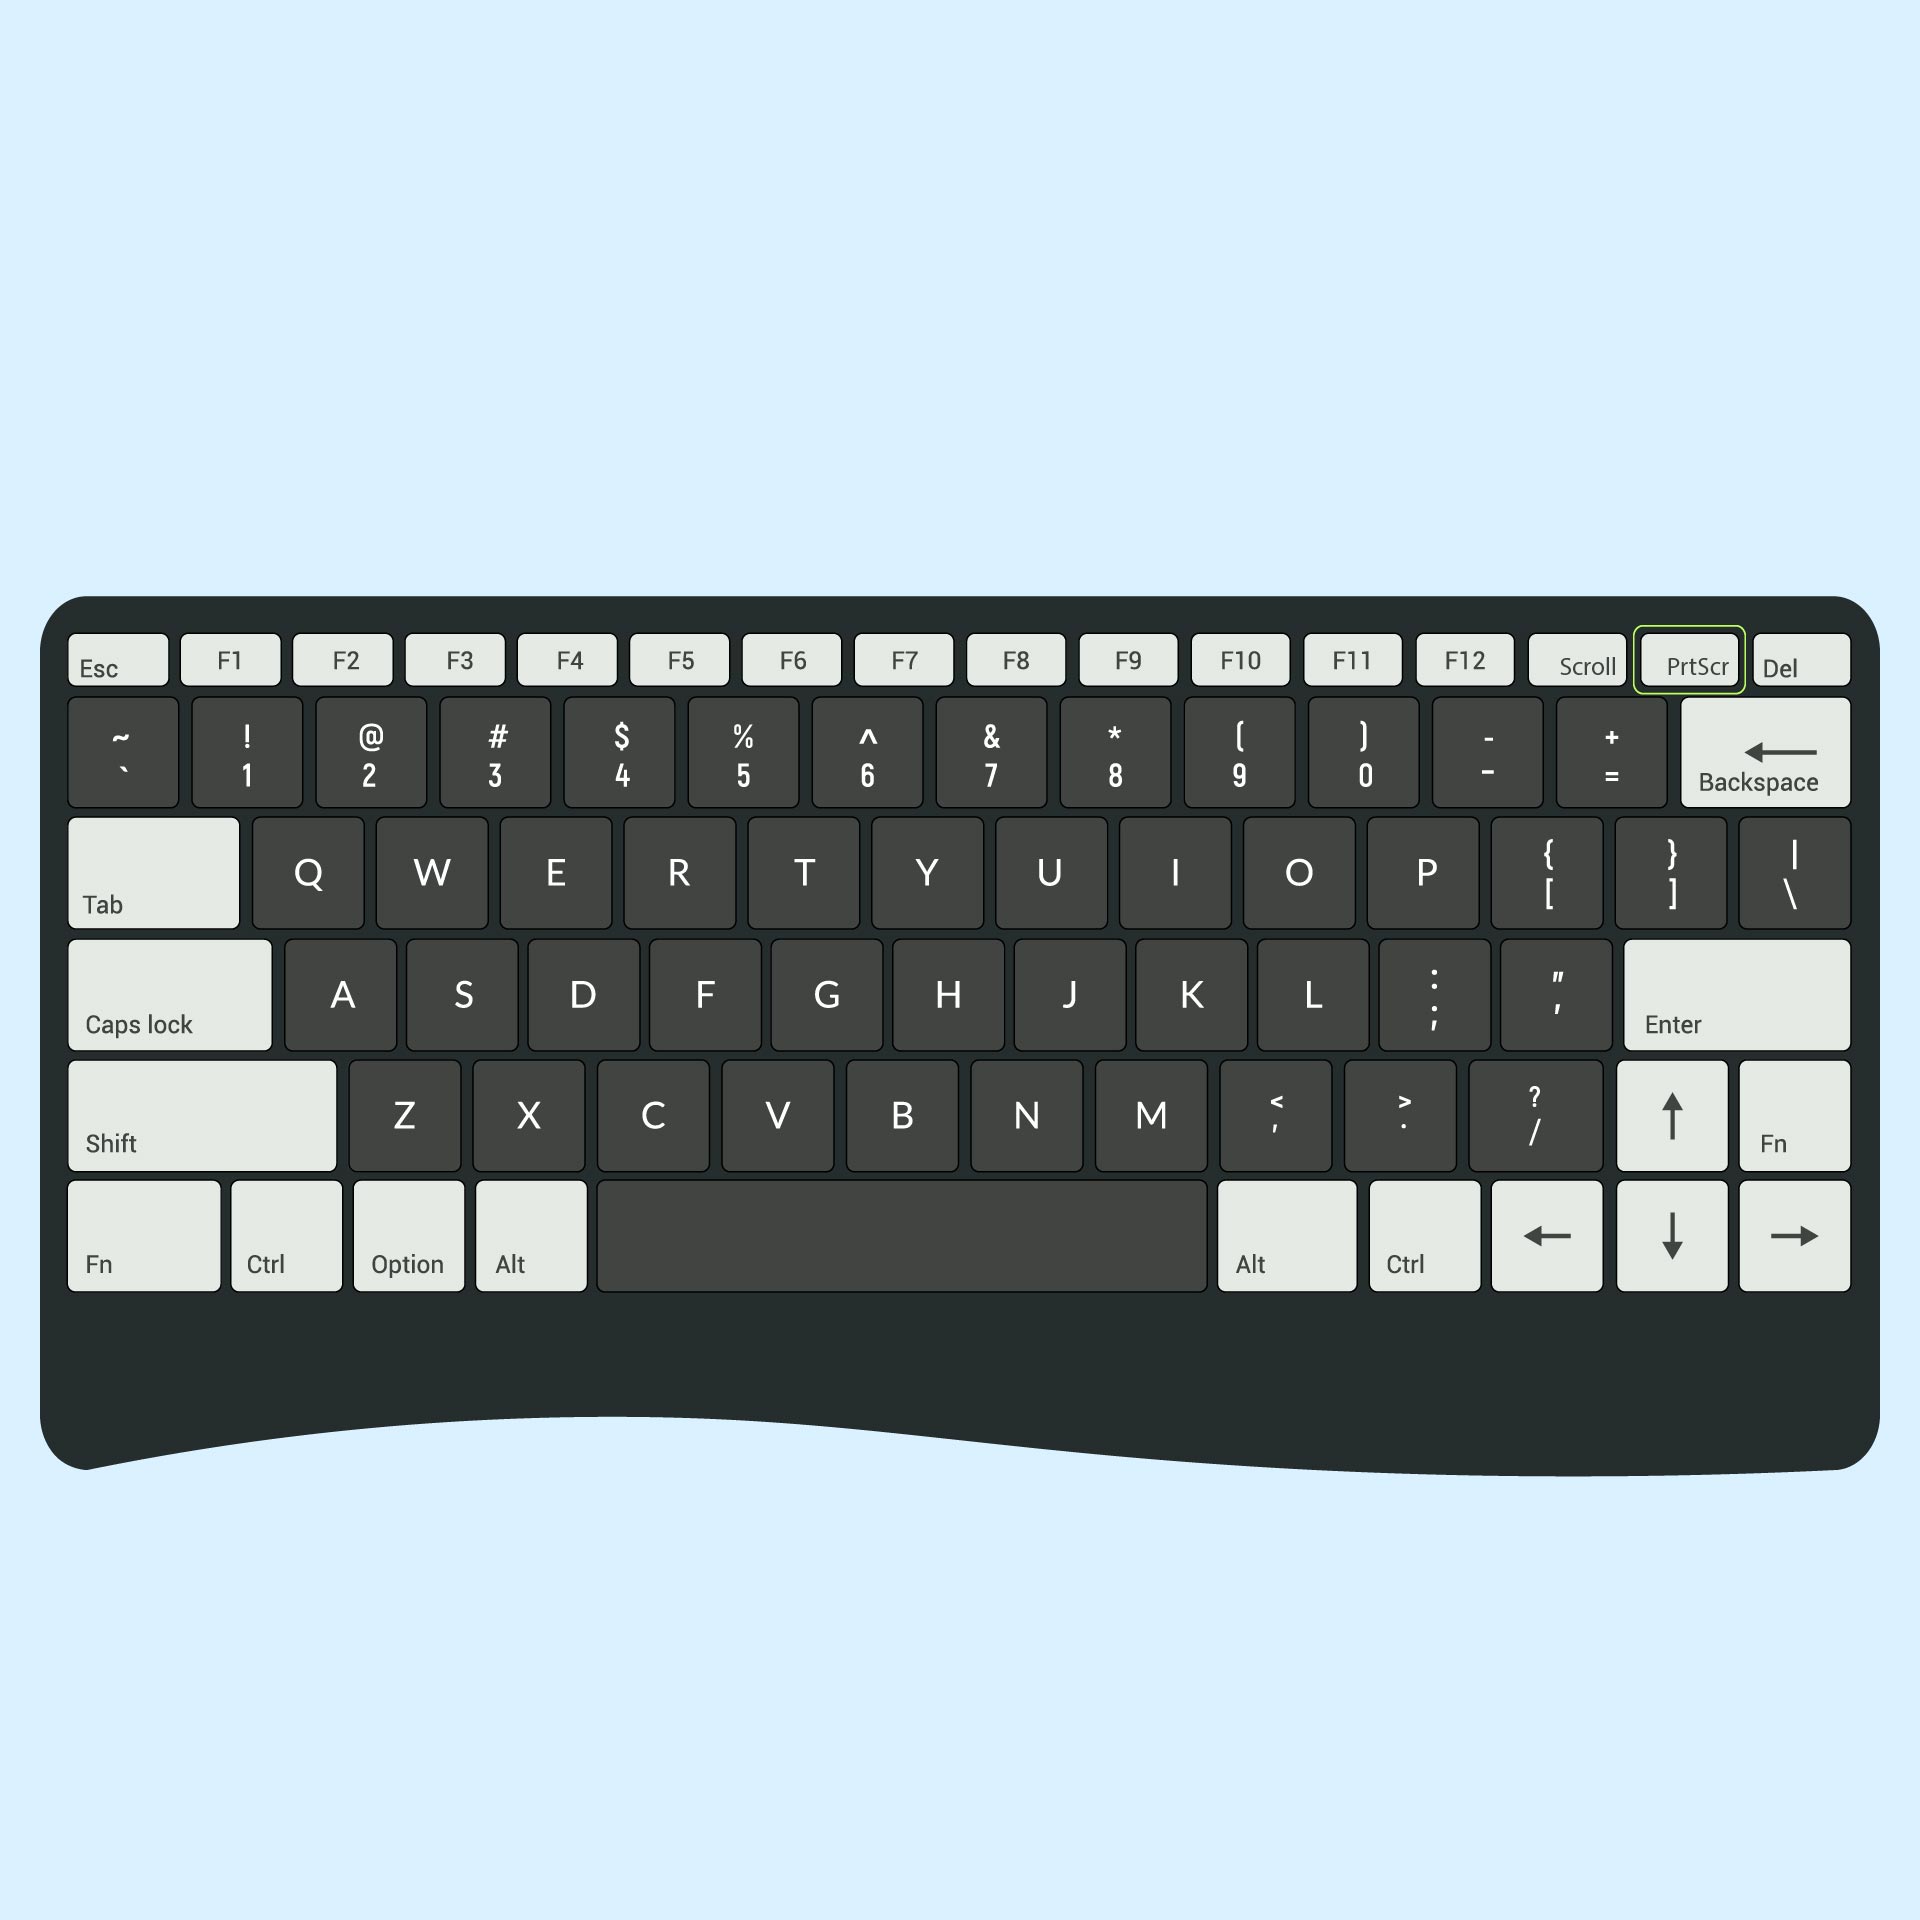 PC Keyboard Layout